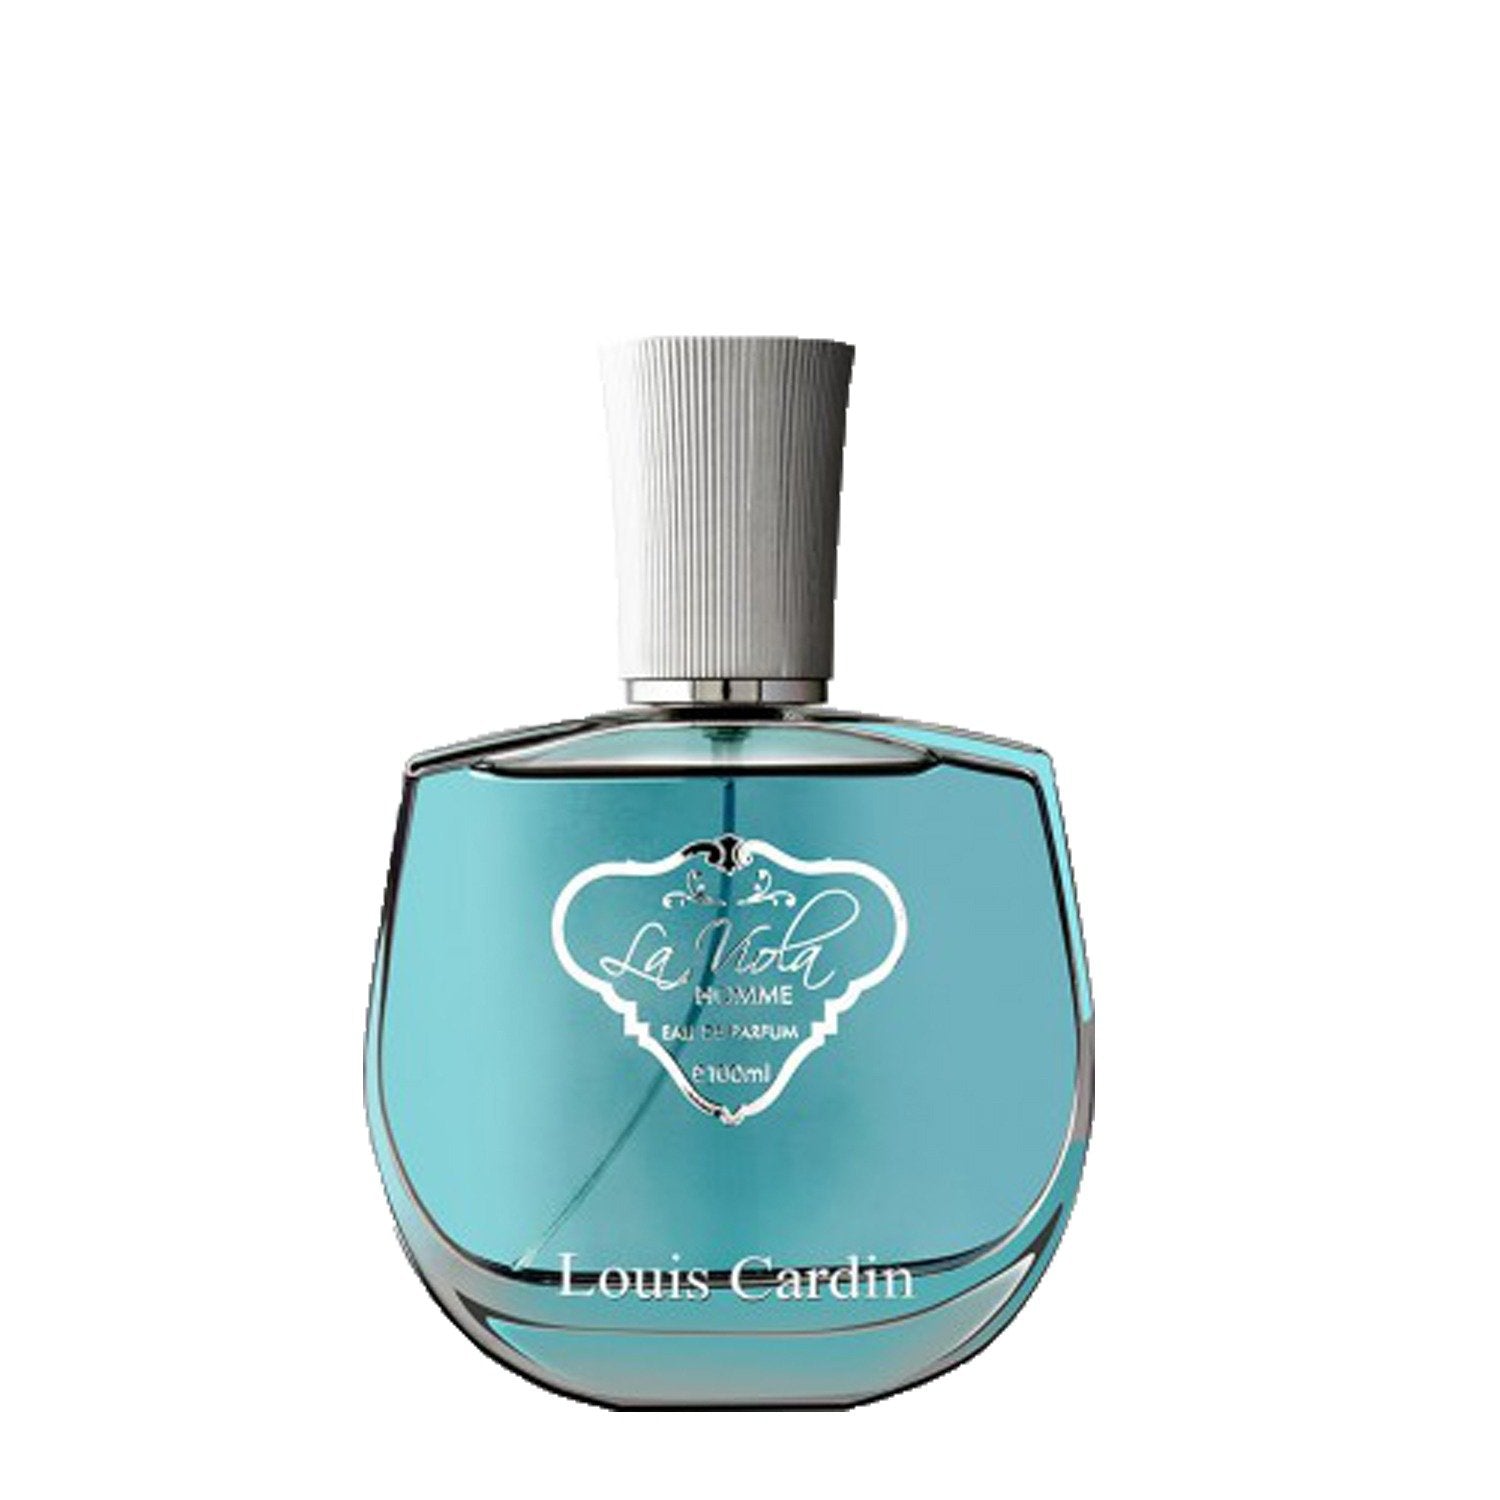 Louis Cardin La Viola Homme - Best men and women pefume cologne scent oud collection